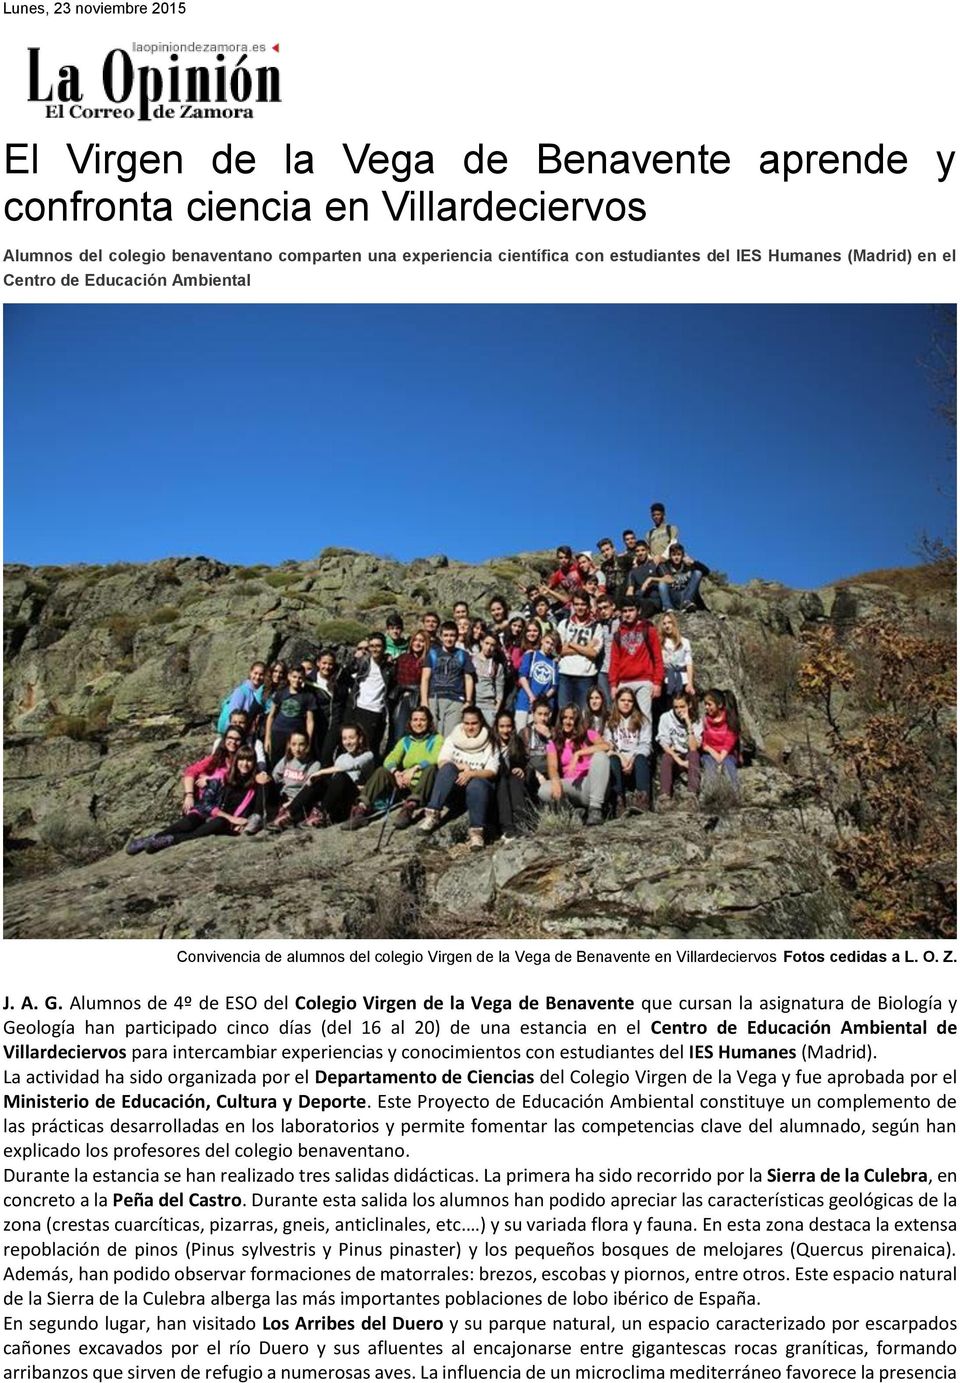 Alumnos de 4º de ESO del Colegio Virgen de la Vega de Benavente que cursan la asignatura de Biología y Geología han participado cinco días (del 16 al 20) de una estancia en el Centro de Educación